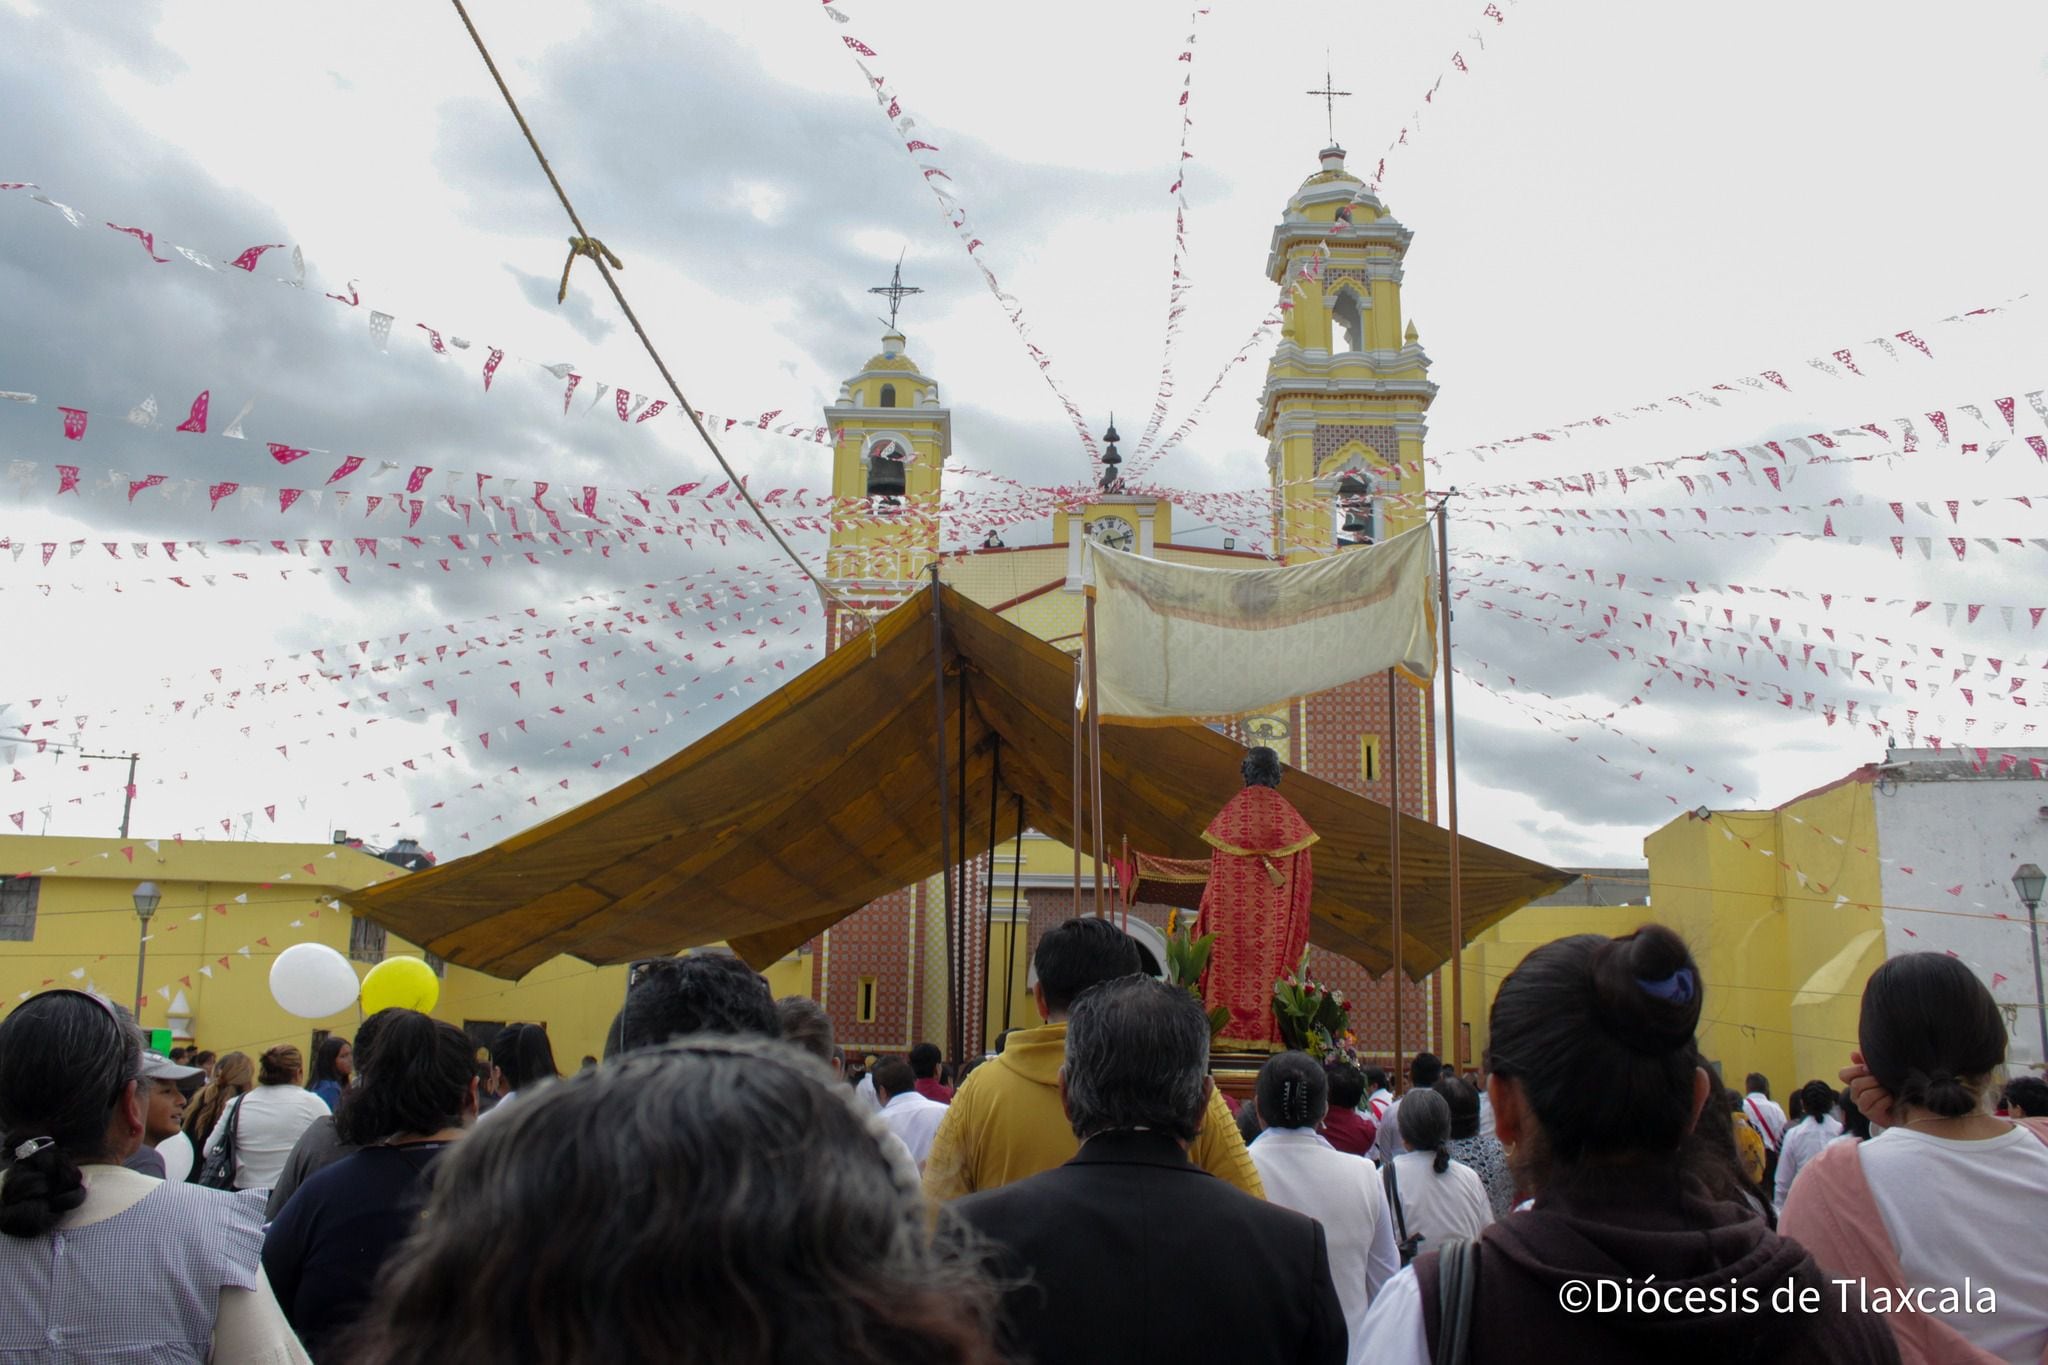 La Arquidiócesis de Tlaxcala no ha emitido un pronunciamiento por el estado incoveniente del párroco de Tepeyanco (Foto: Facebook/DiocesisdeTlaxcala)